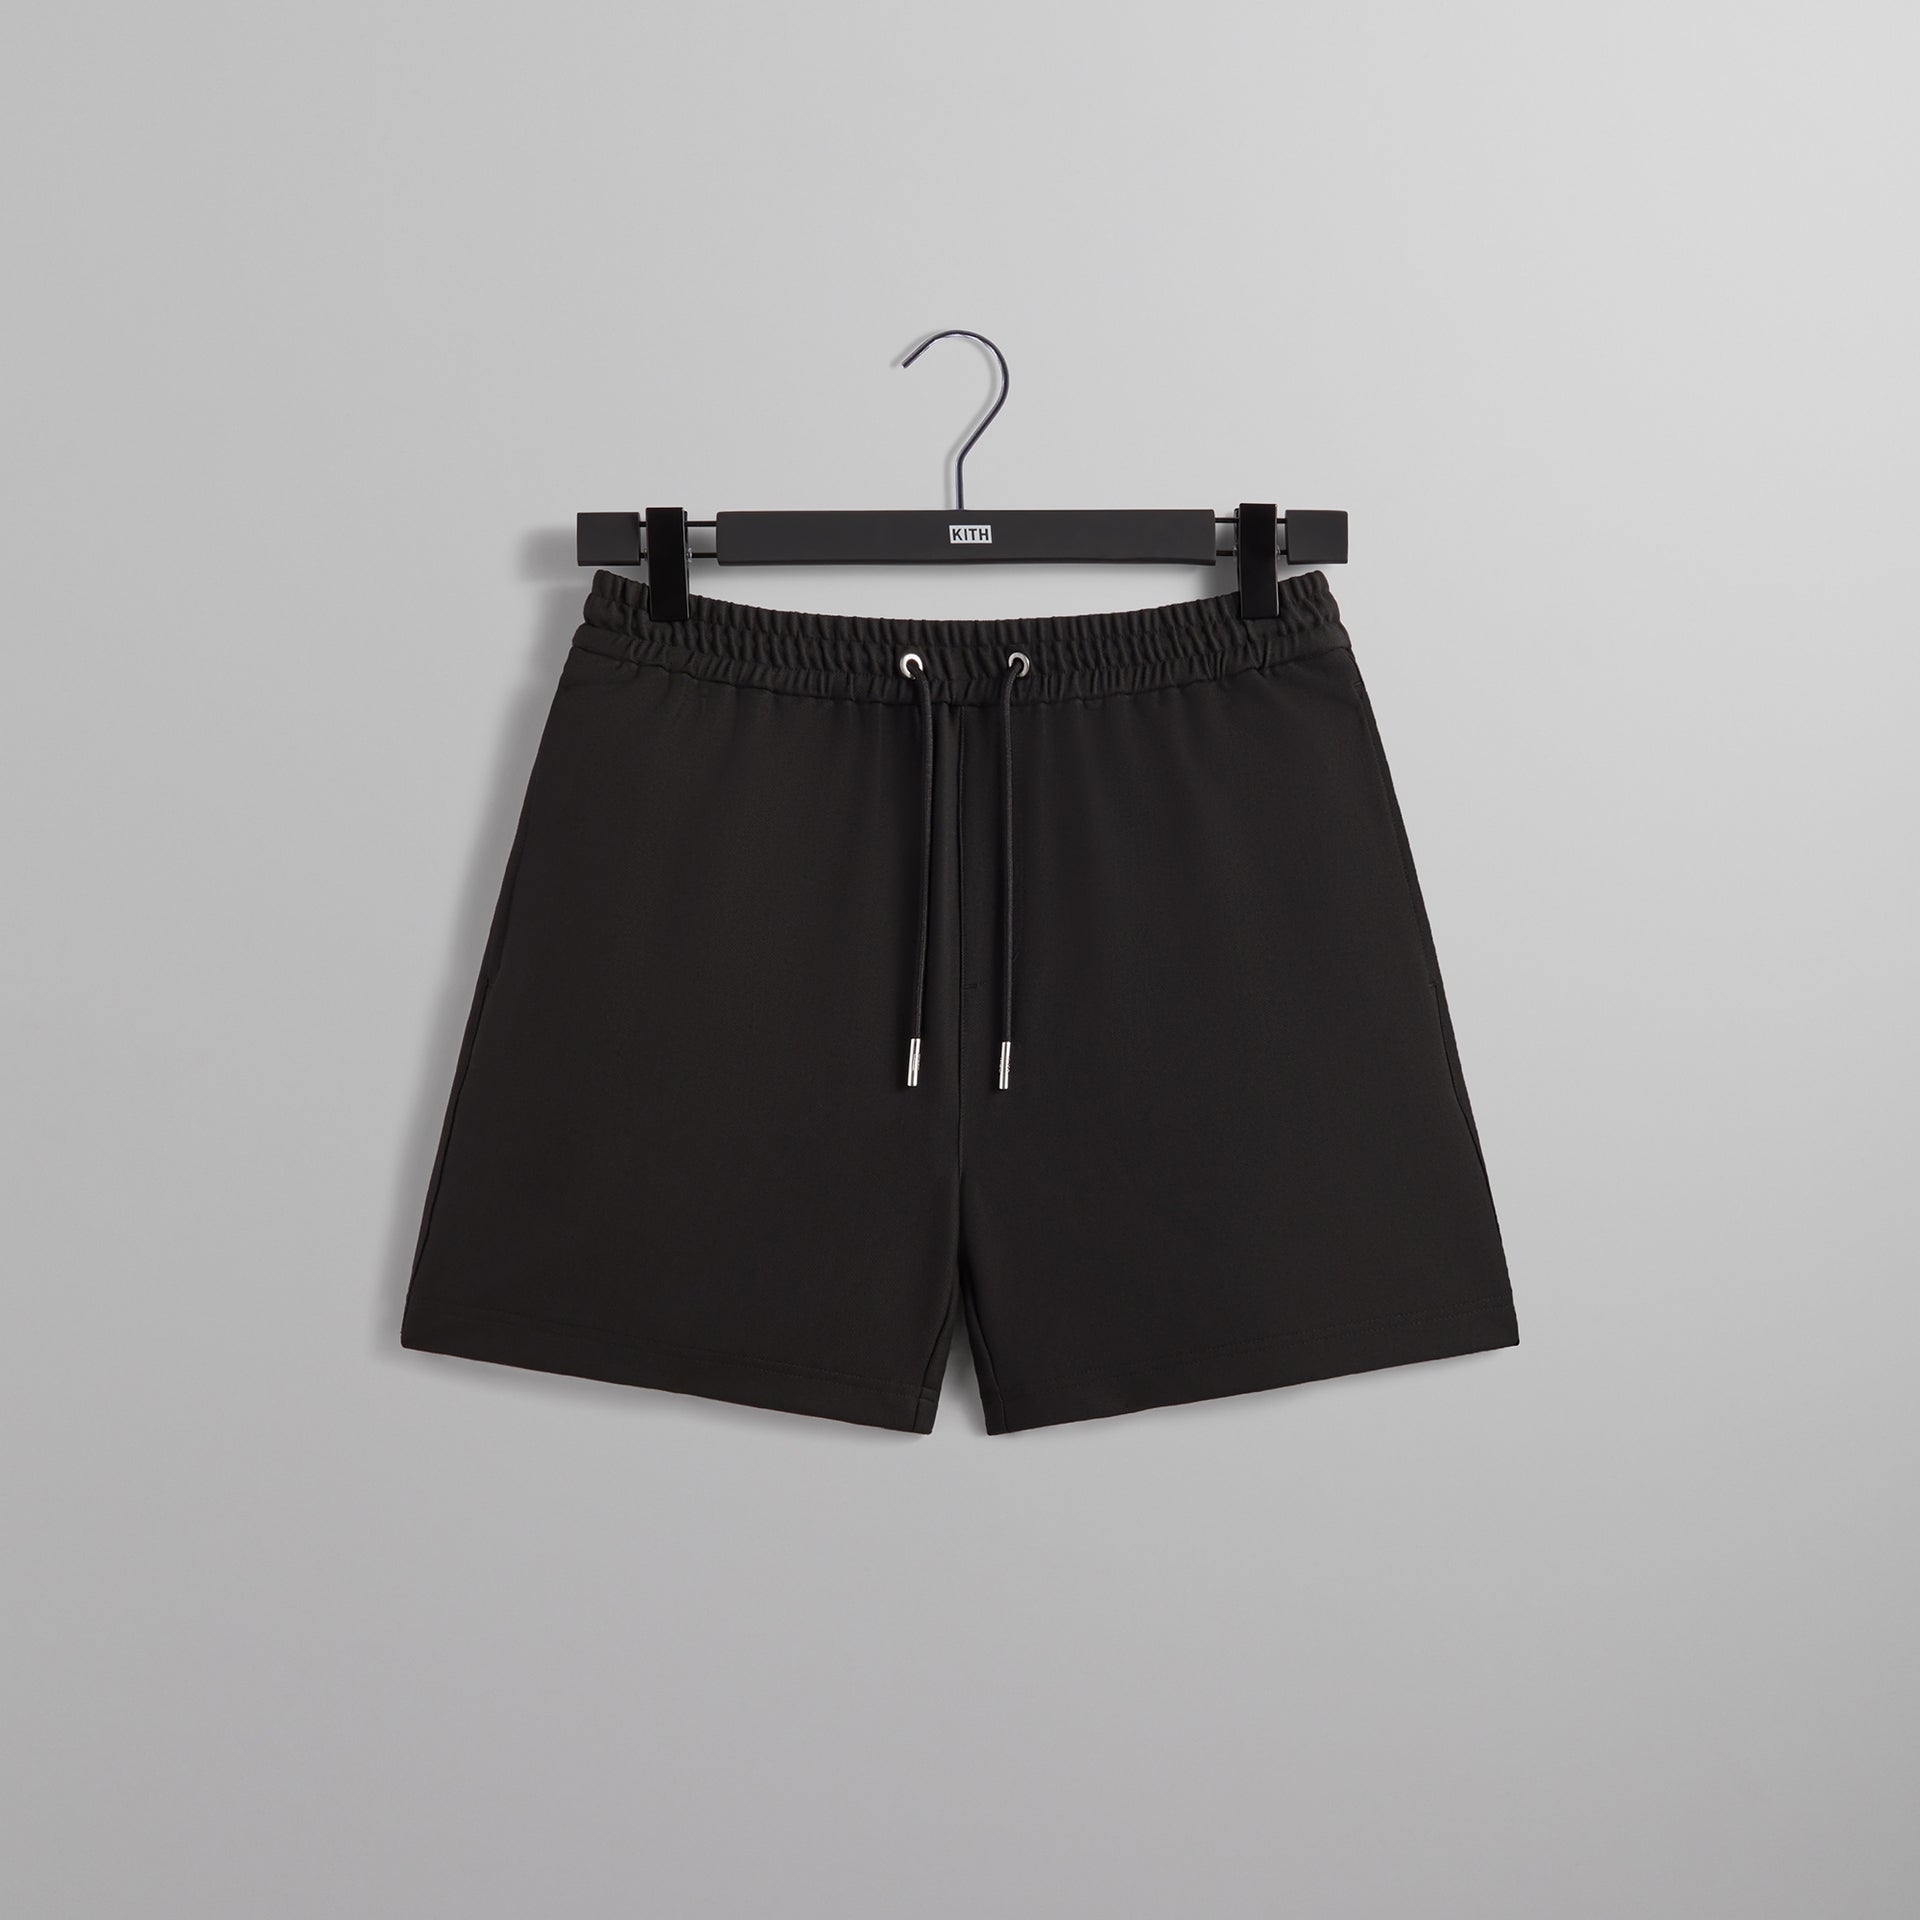 UrlfreezeShops Double Knit Fairfax Short - Black